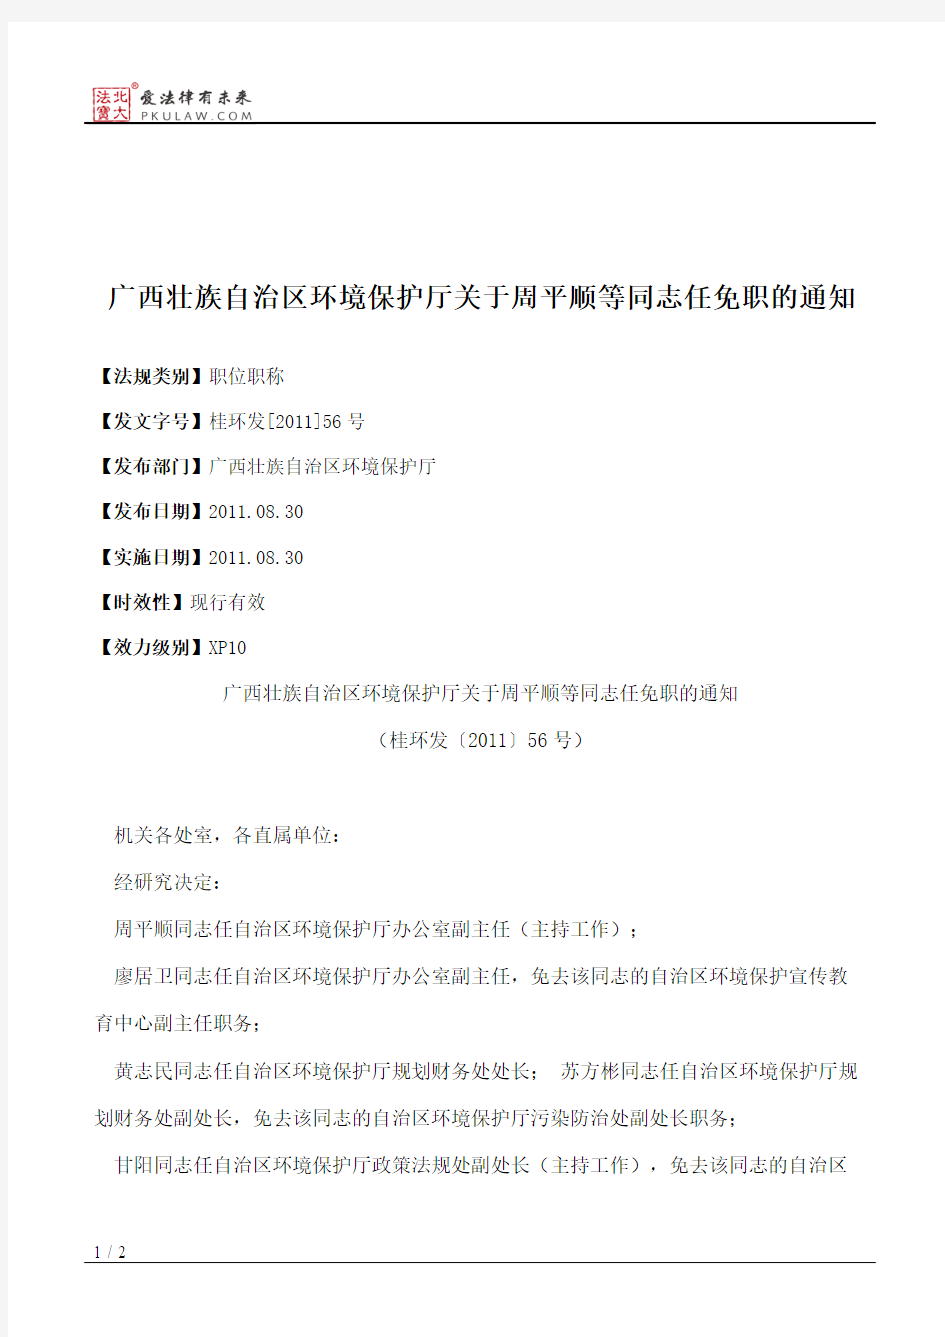 广西壮族自治区环境保护厅关于周平顺等同志任免职的通知